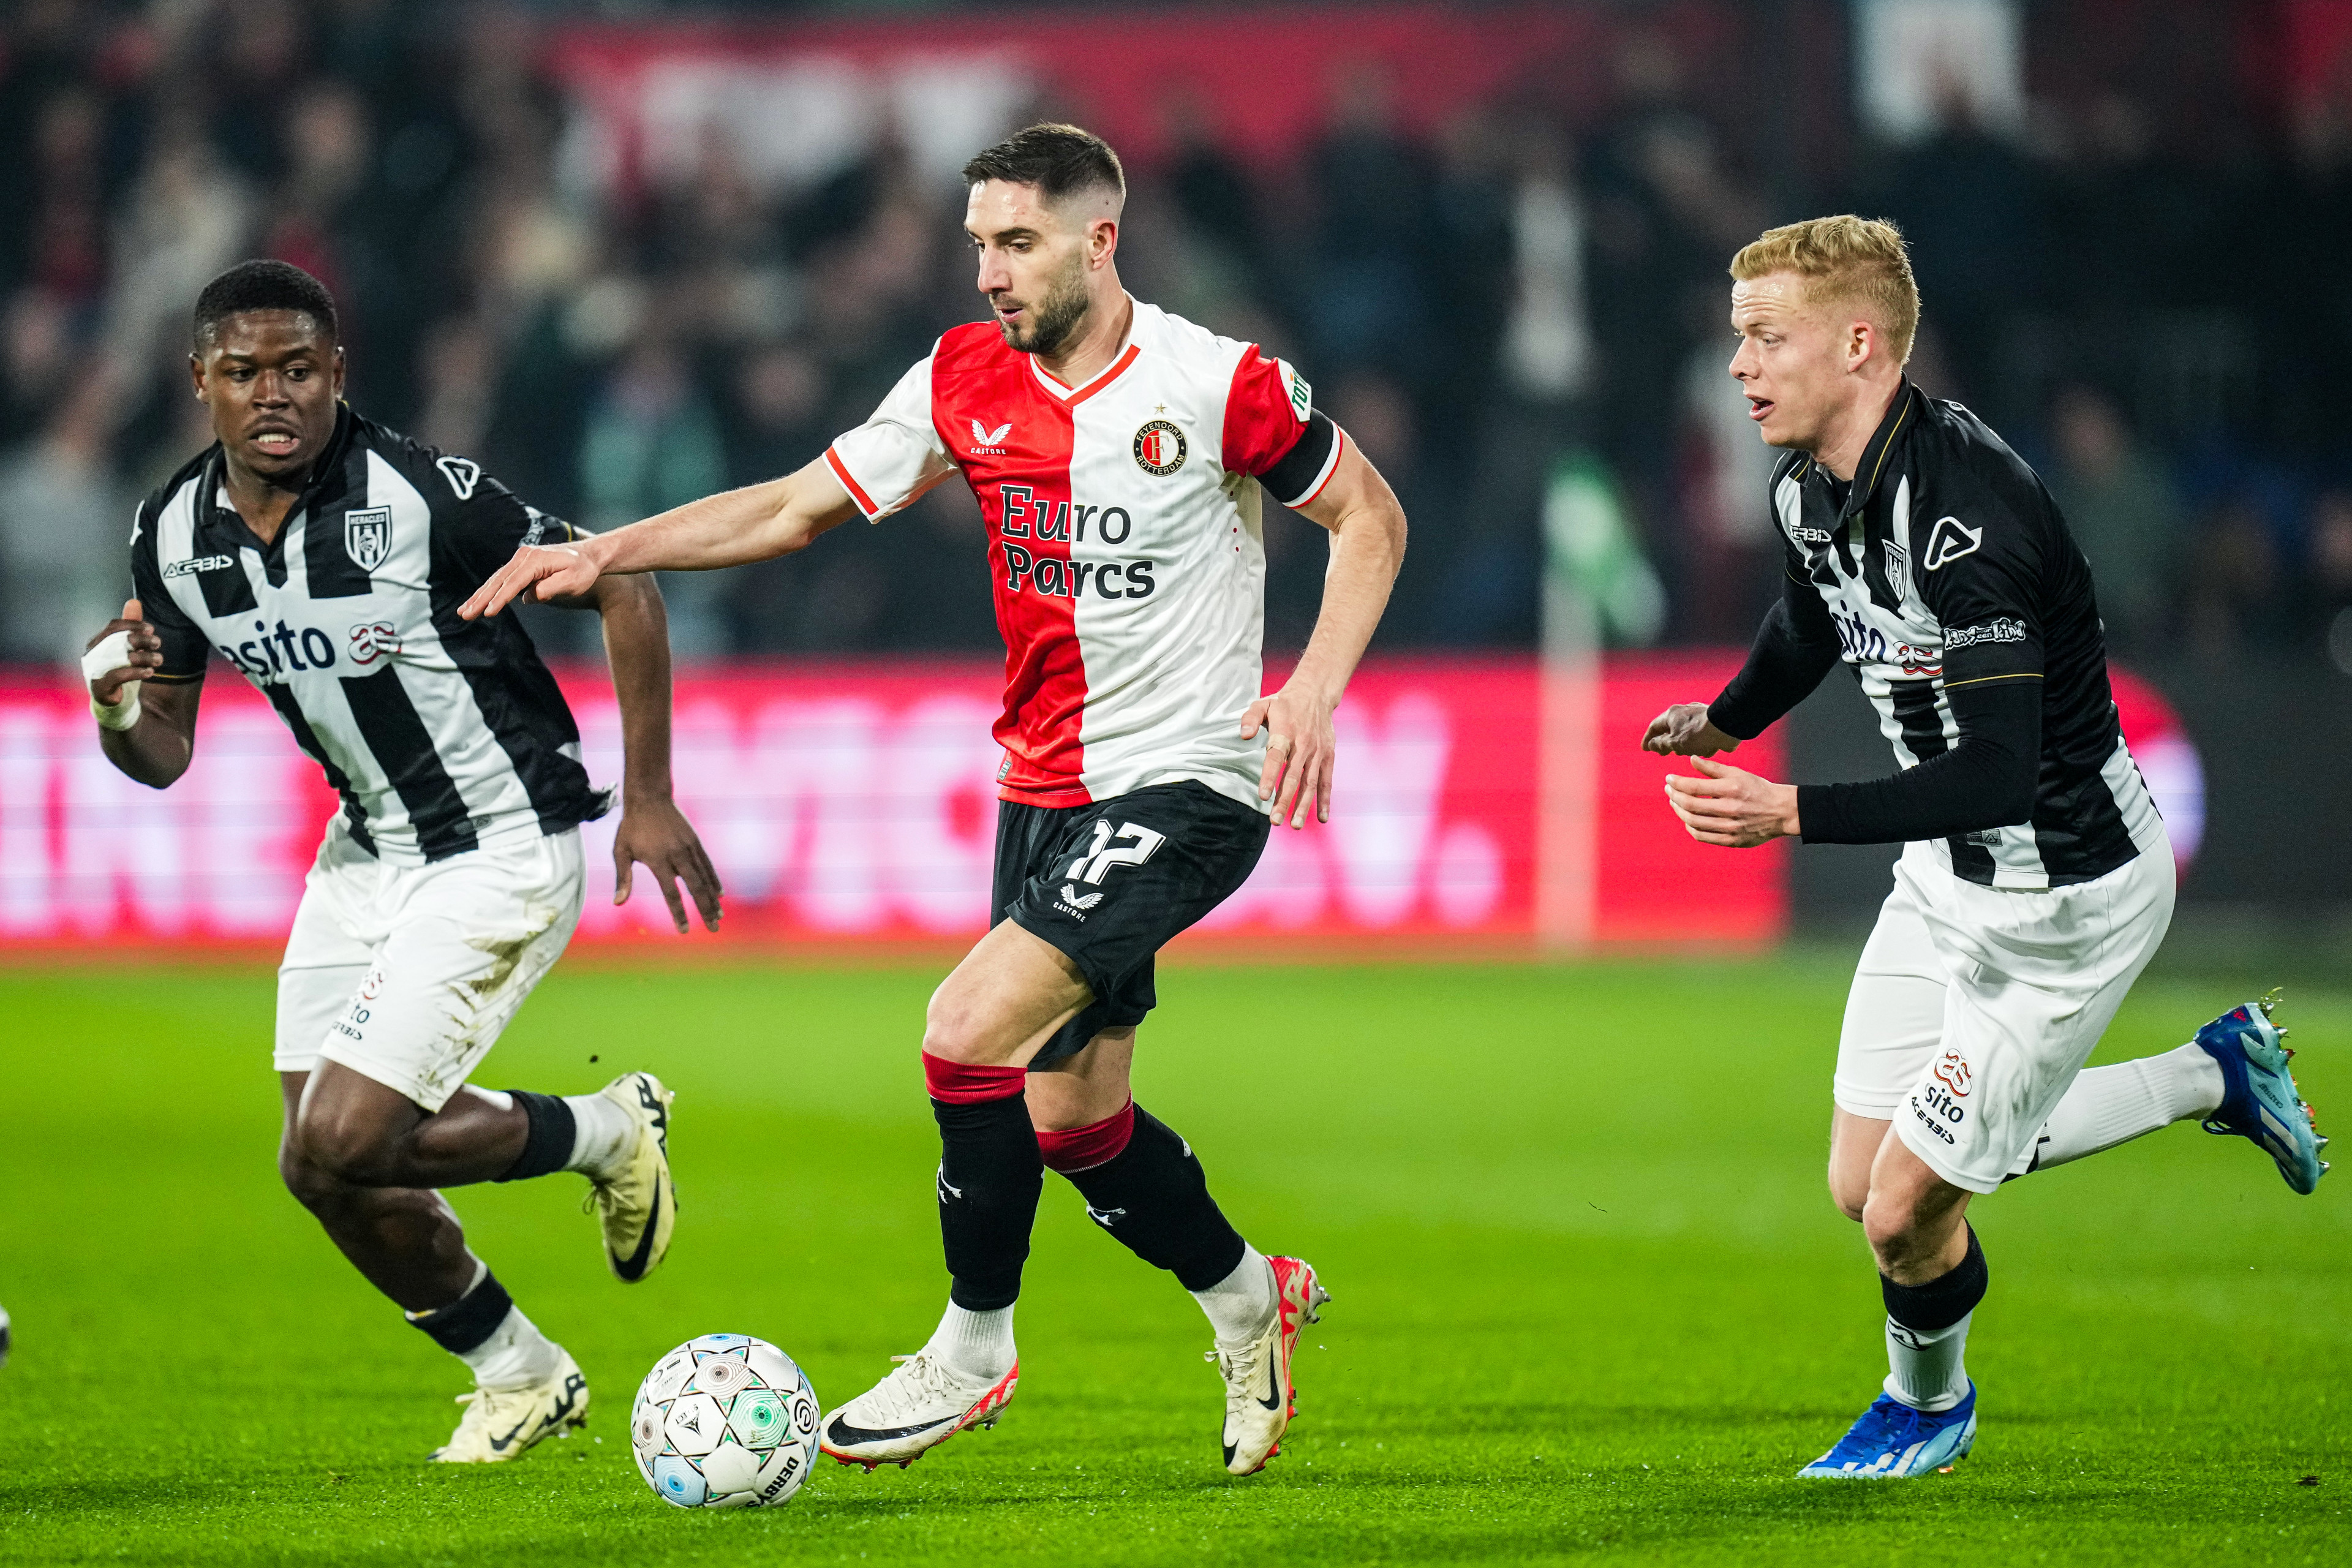 Liveblog • Feyenoord - Heracles • 3-0 [FT]